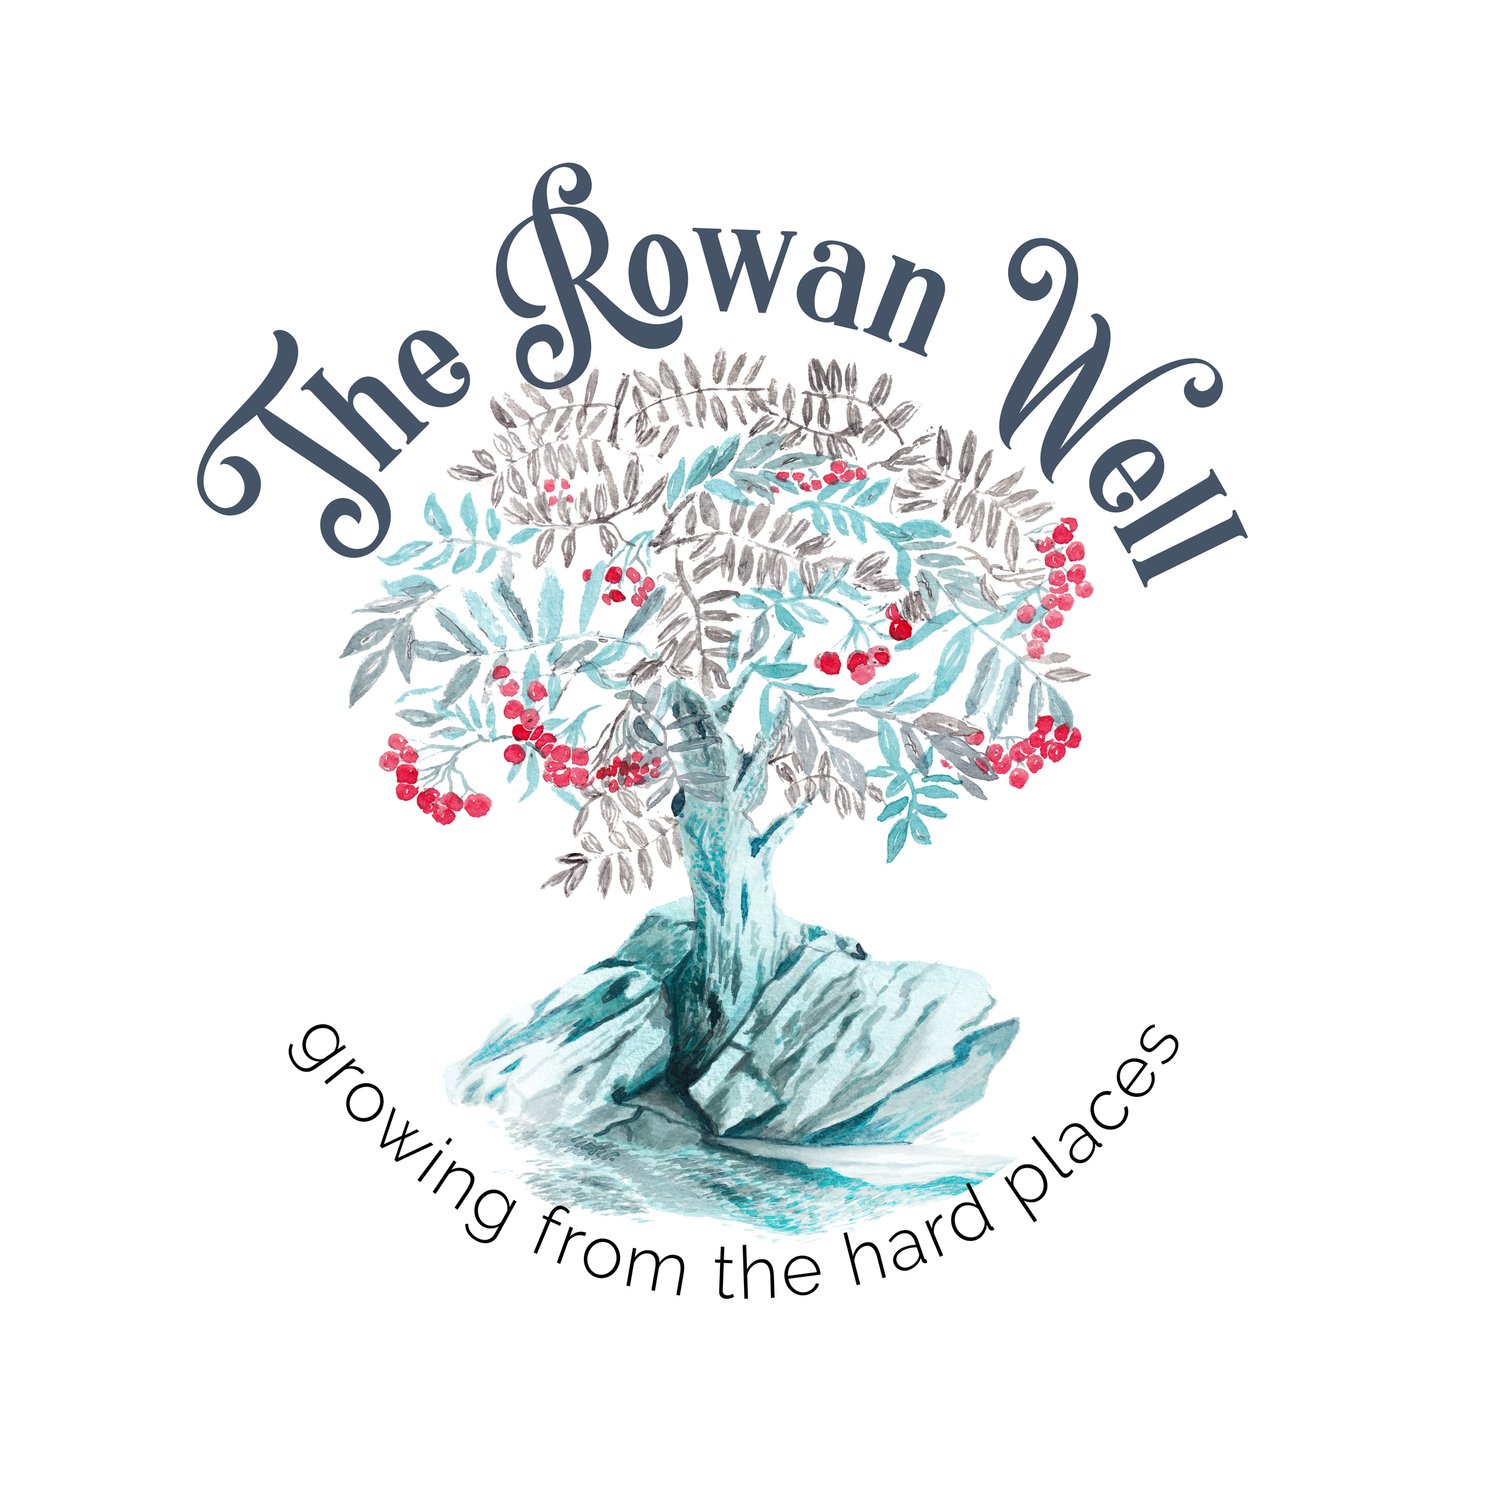 The Rowan Well